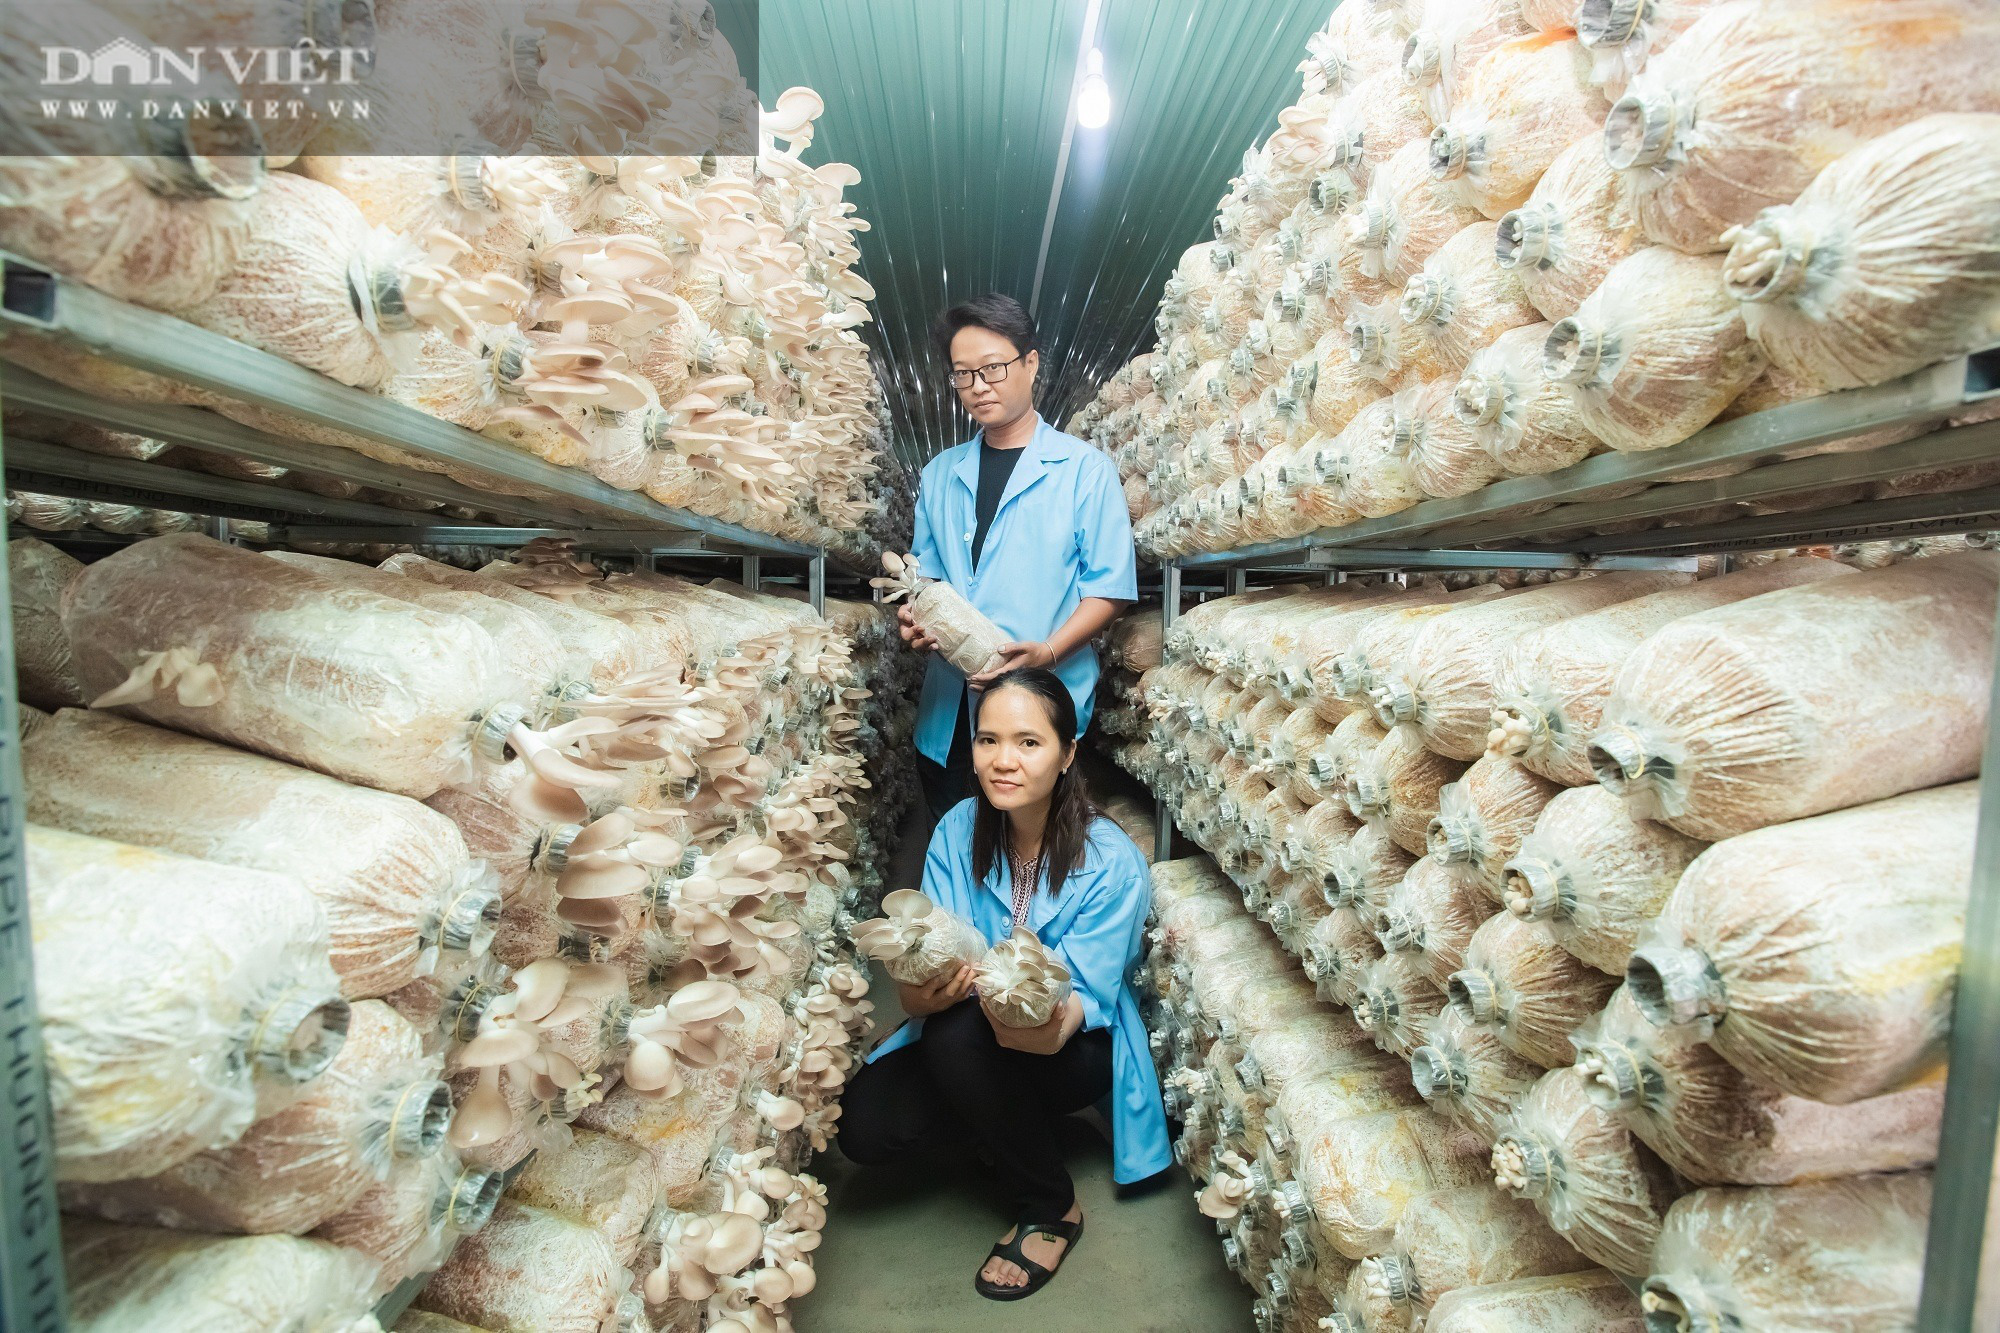 Bình Sơn Mở rộng mô hình trồng nấm sò  Kinh tế  Báo Quảng Ngãi